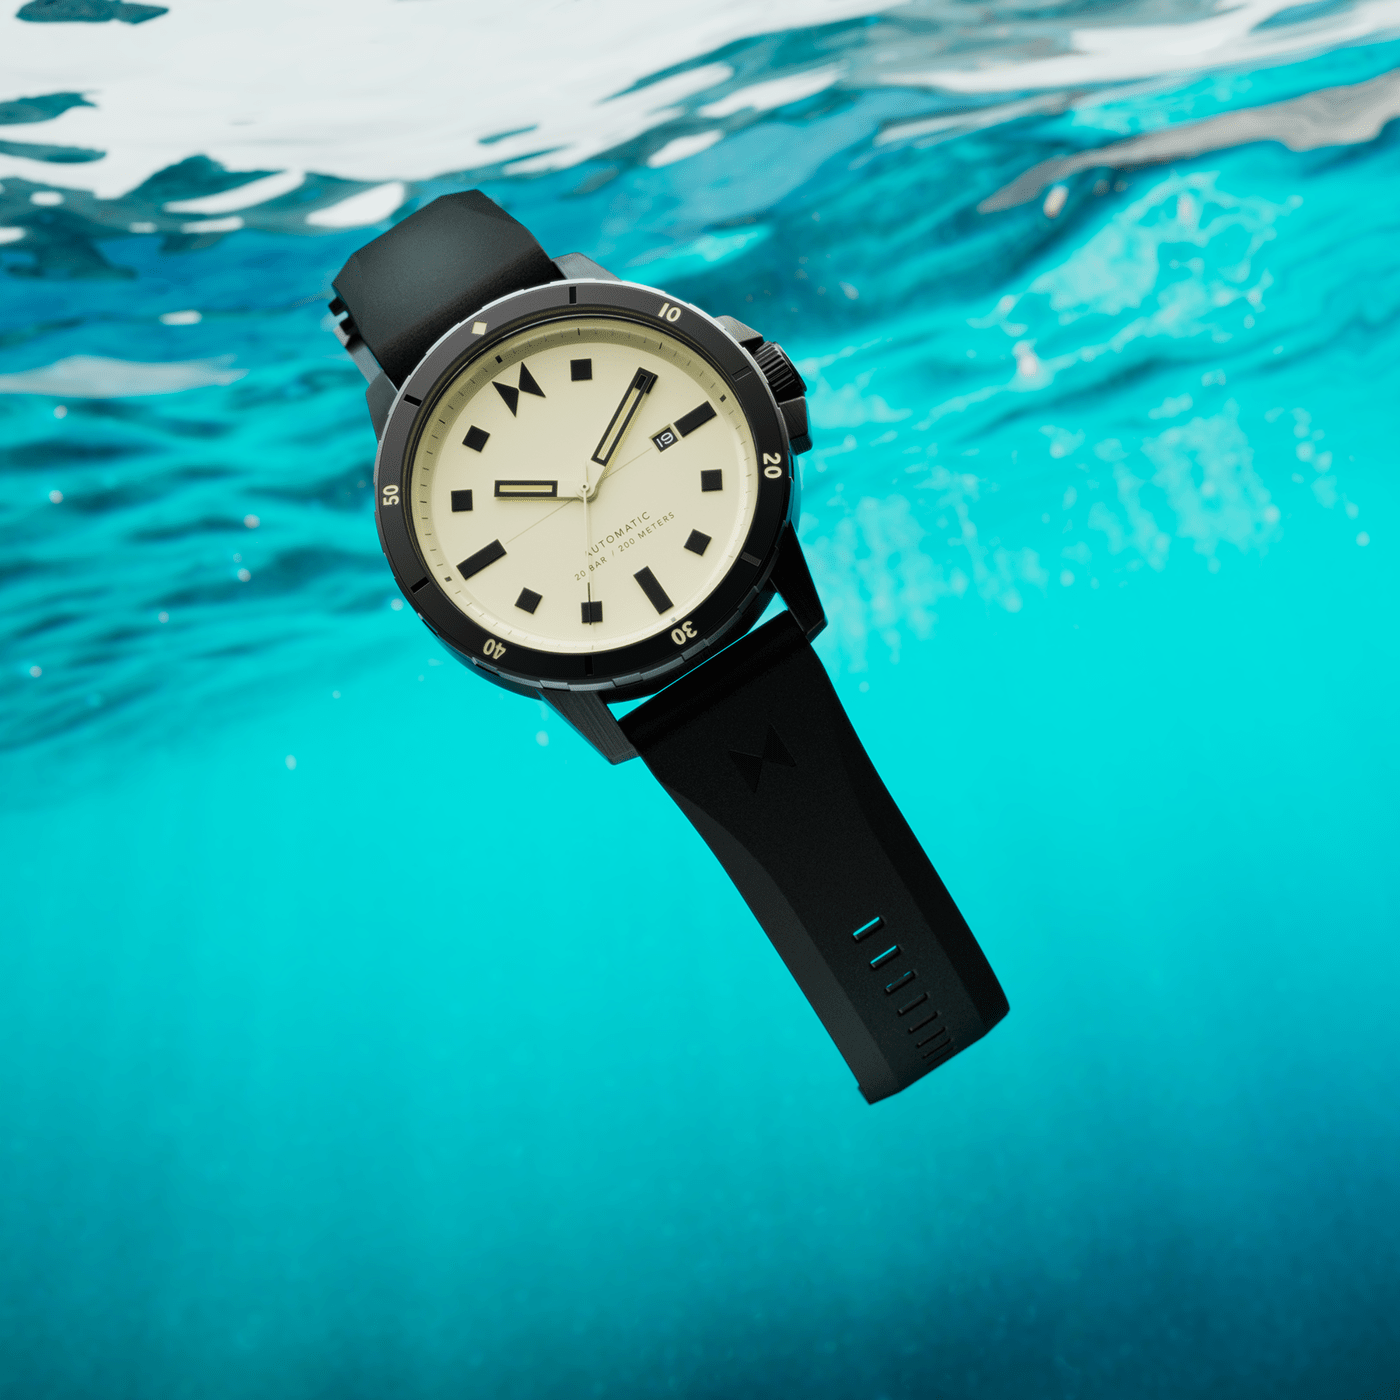 watch watch design timepiece clock design 3D Render CGI underwater